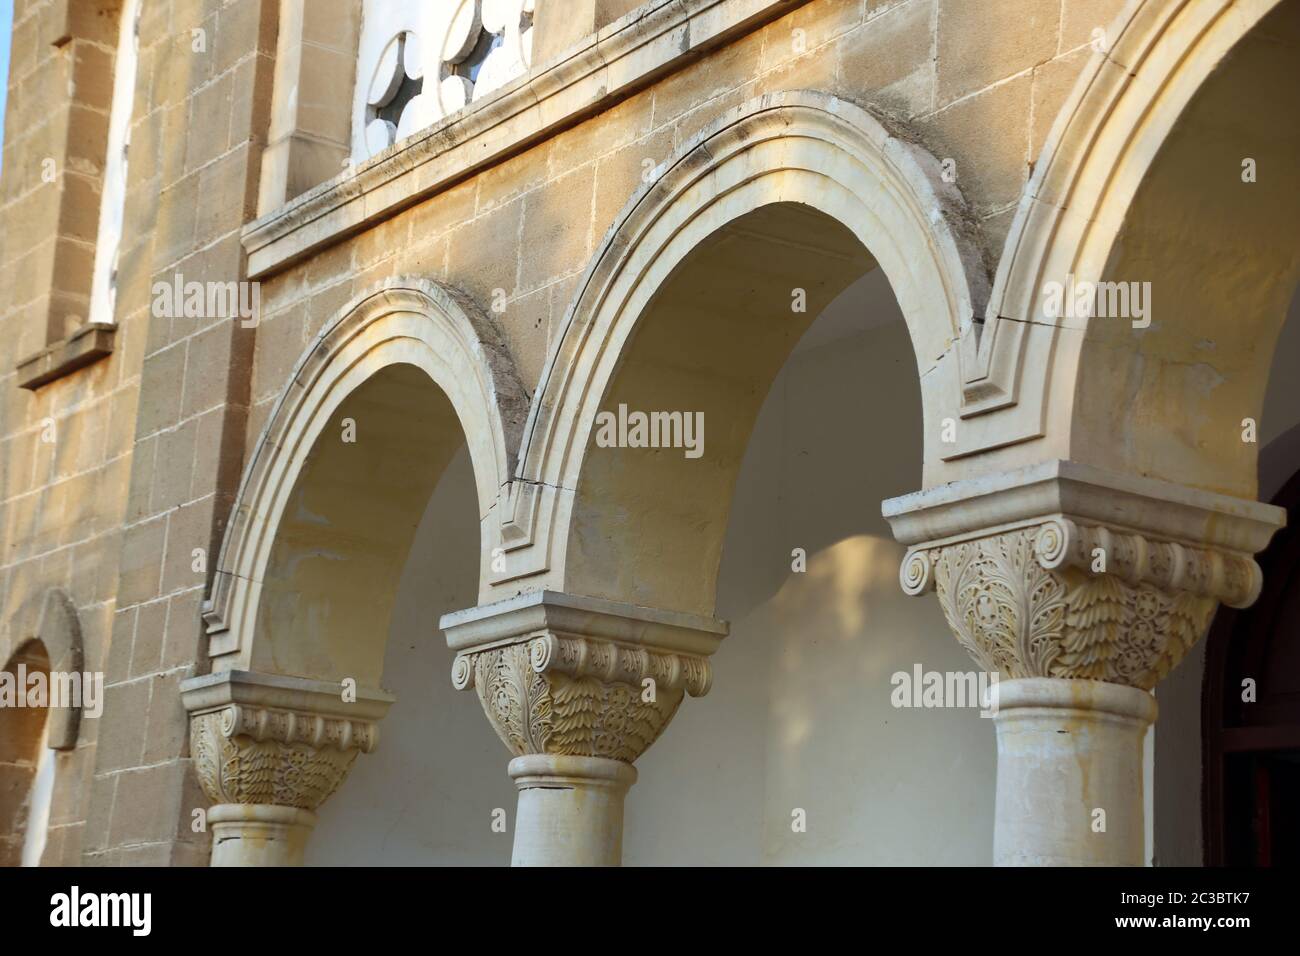 ehemalige, entweihte  griechisch orthodoxe Kirche, Pamuklu/ Tavors, Türkische Republik Nordzypern Stock Photo